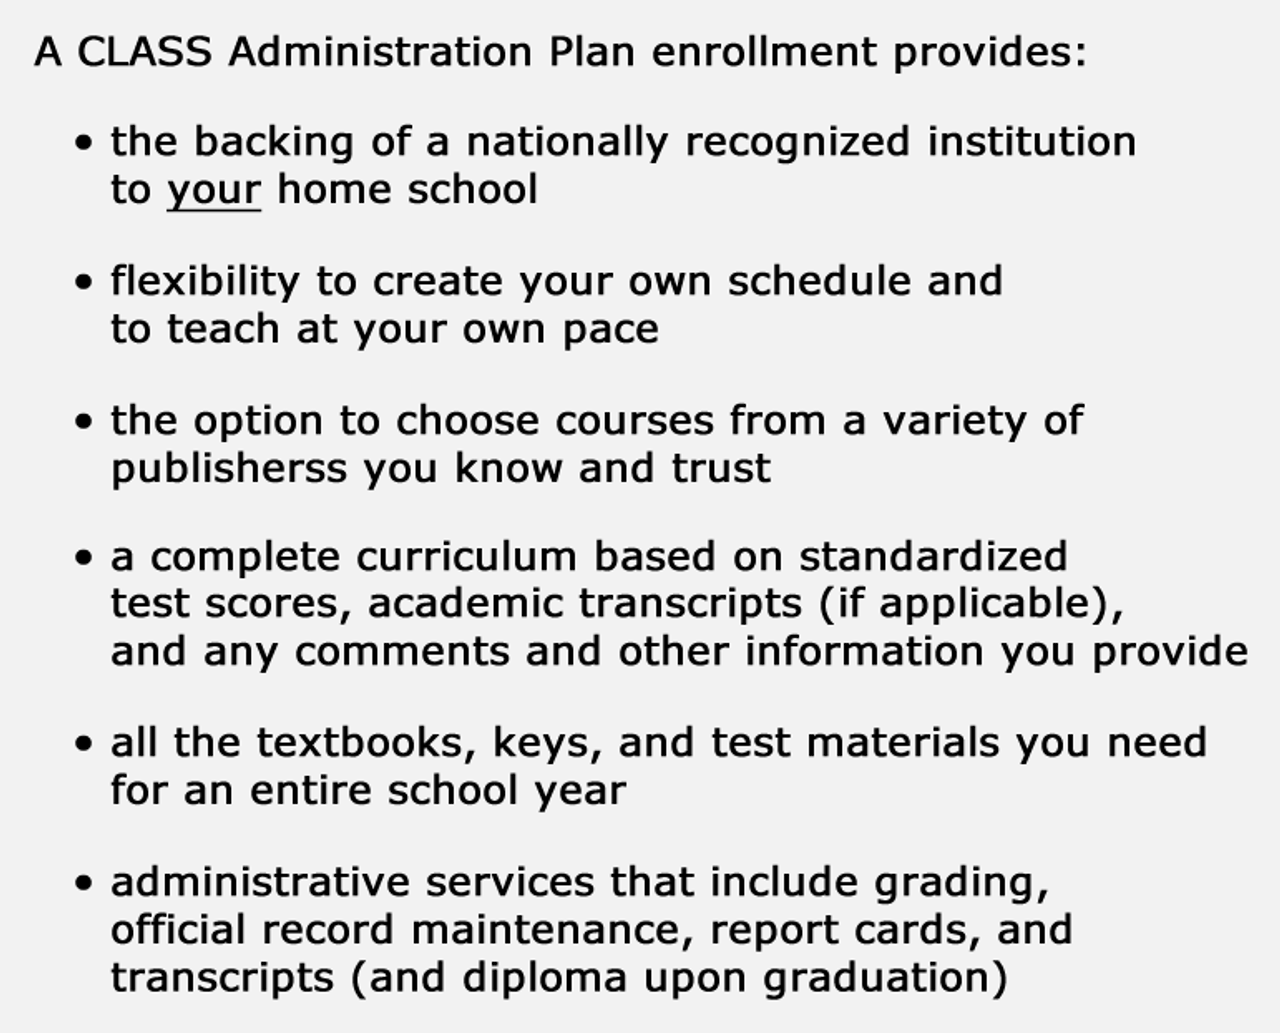 CLASS Administration Plan Enrollment Description